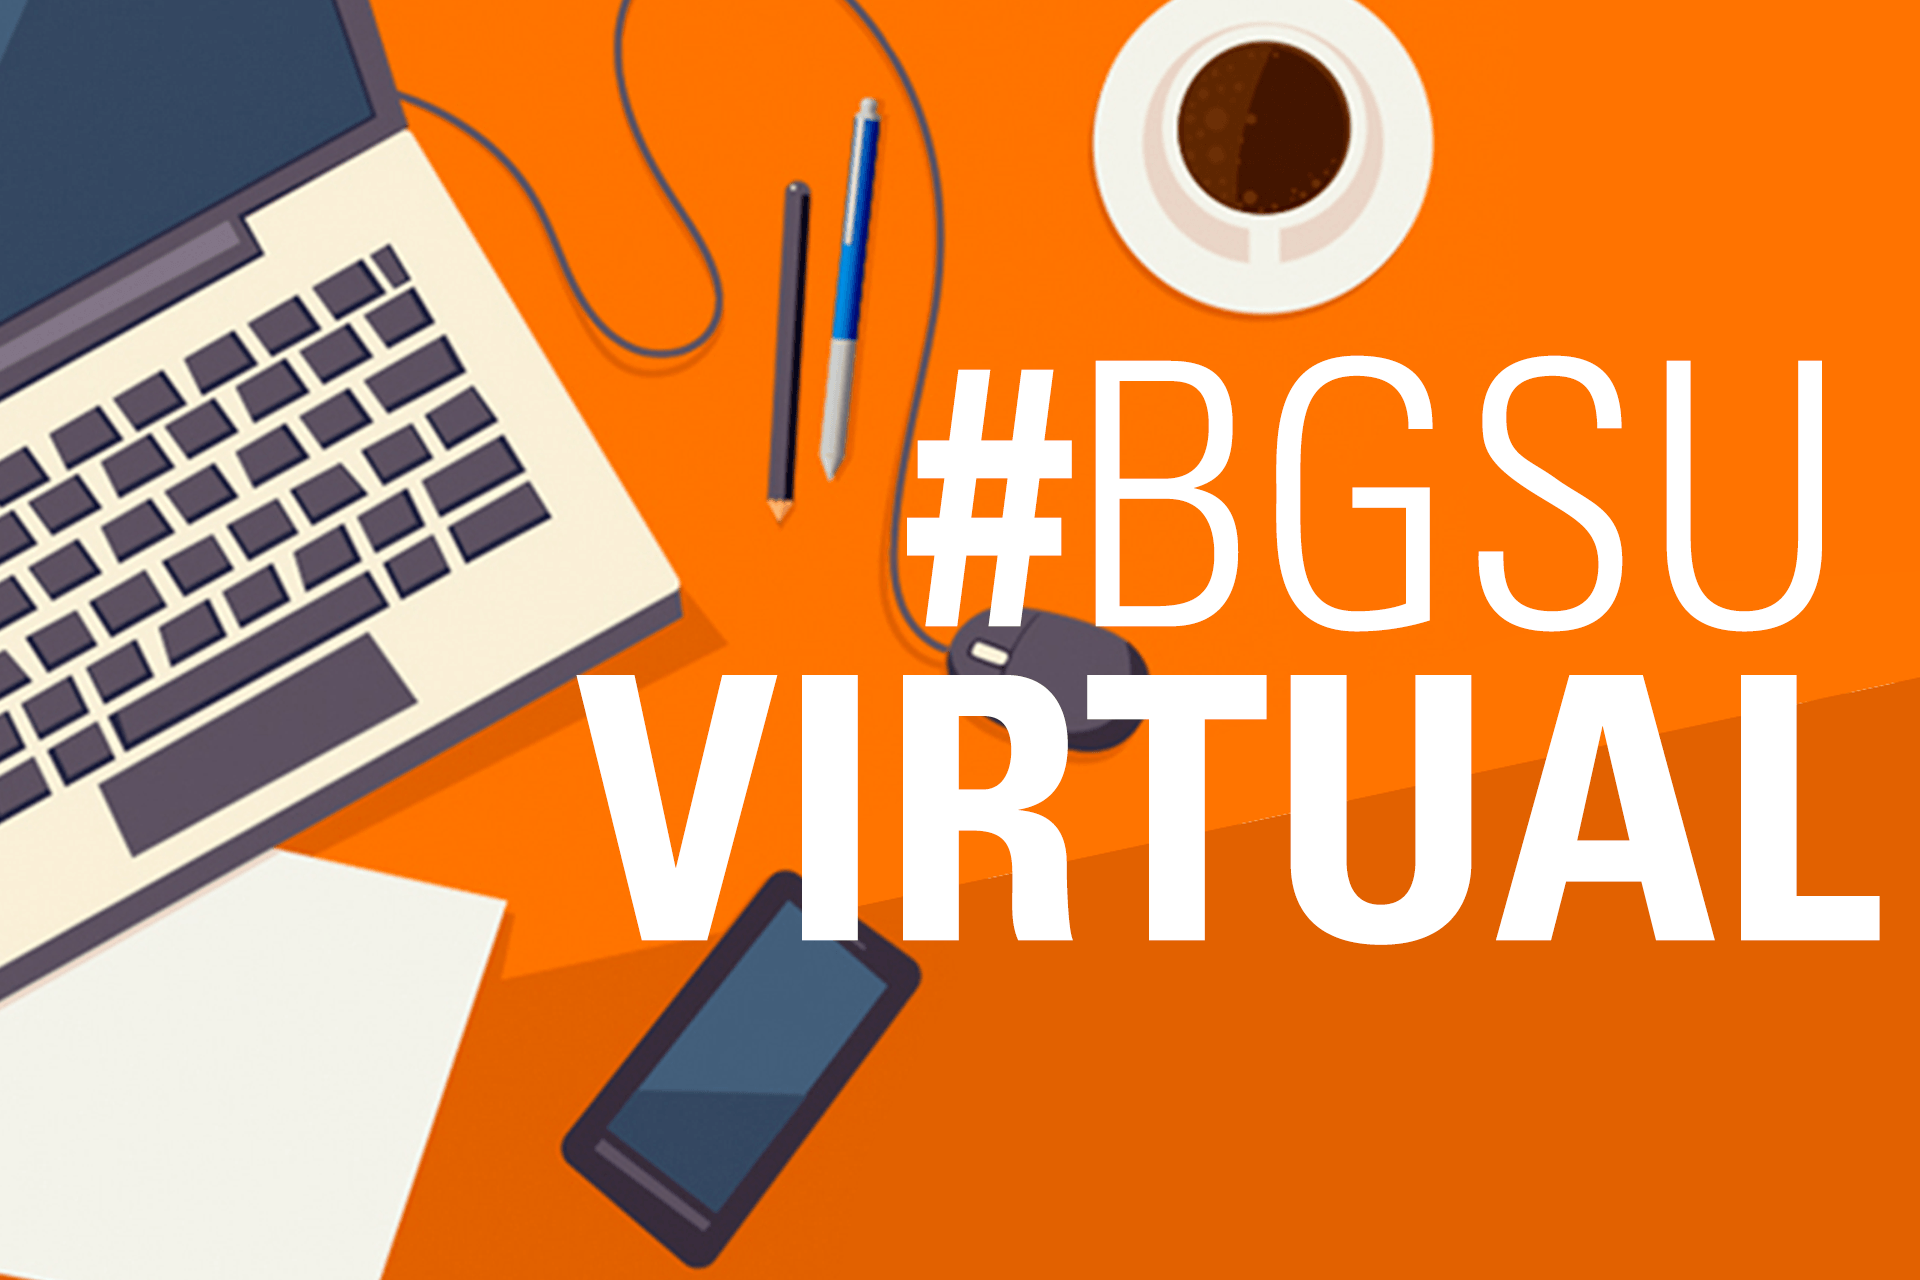 BGSU-Virtual